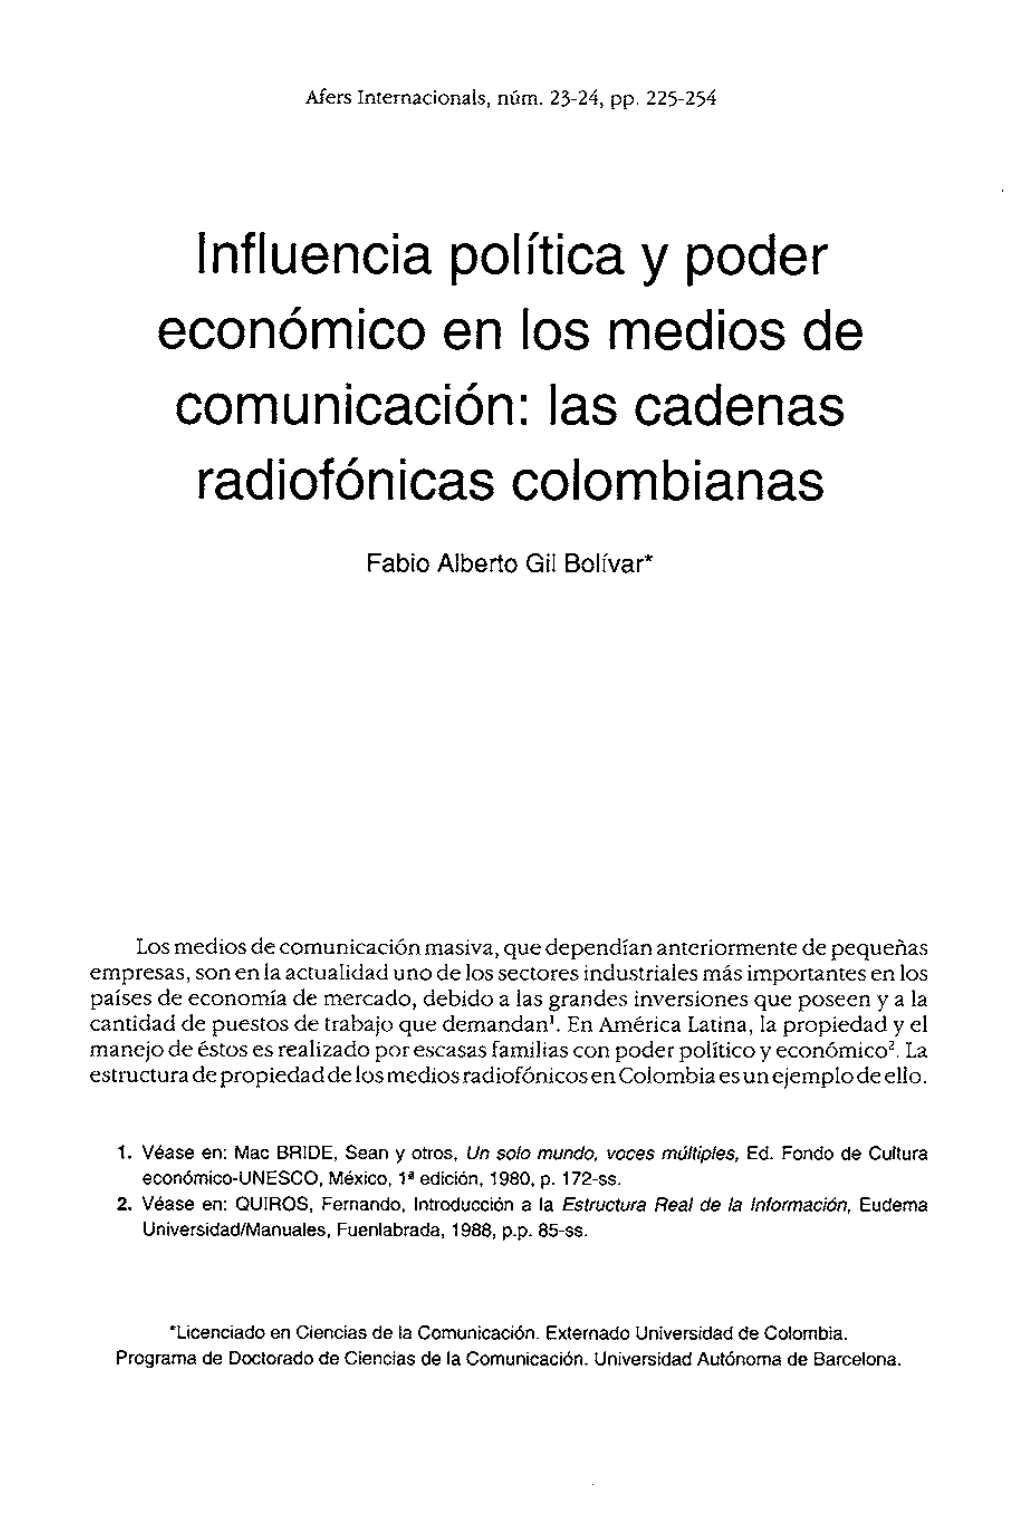 Lnfluencia Política Y Poder Economico En 10S Medios De Comunicacion: Las Cadenas Radiofonicas Colombianas